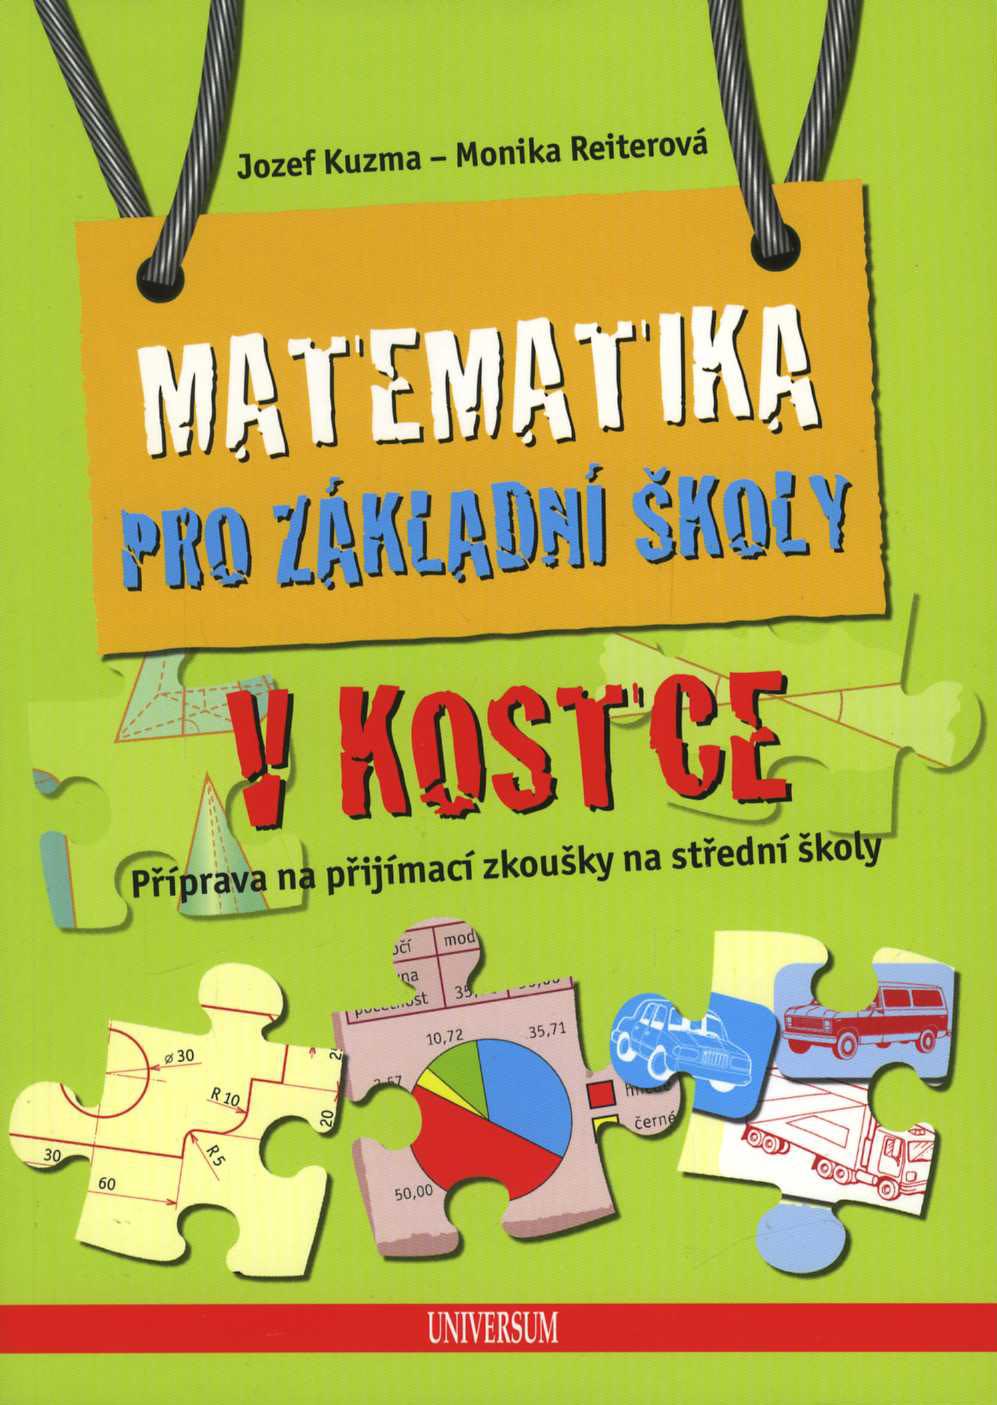 Matematika pro základní školy v kostce (Jozef Kuzma, Monika Reiterová)